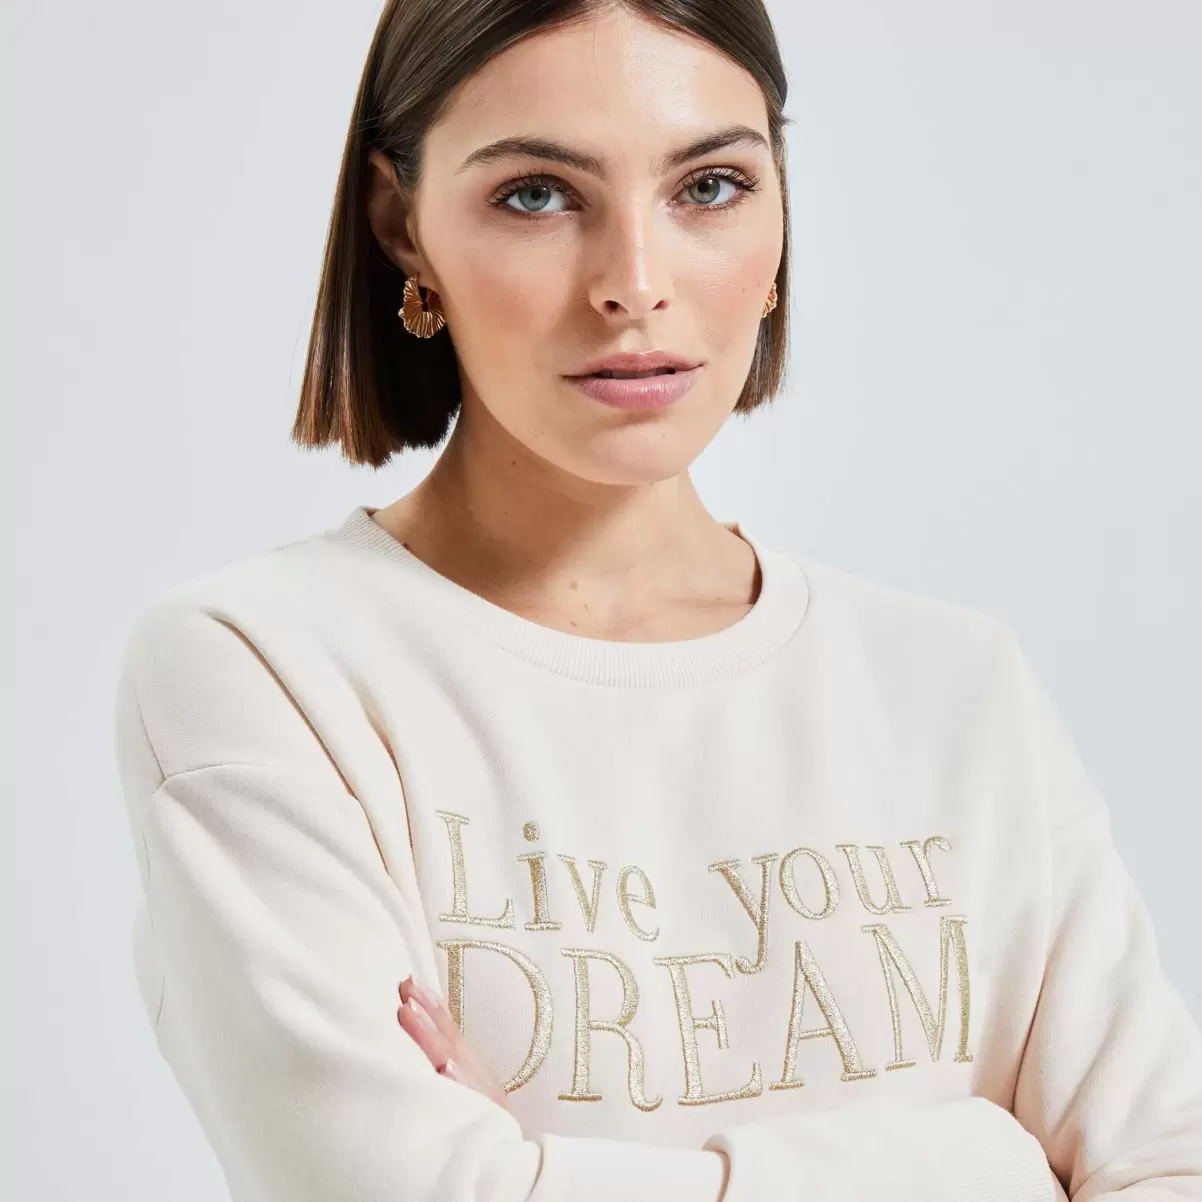 Femme Grain De Malic T-Shirts & Tops Beige Sweat Uni Manches Longues Femme Utile - 2